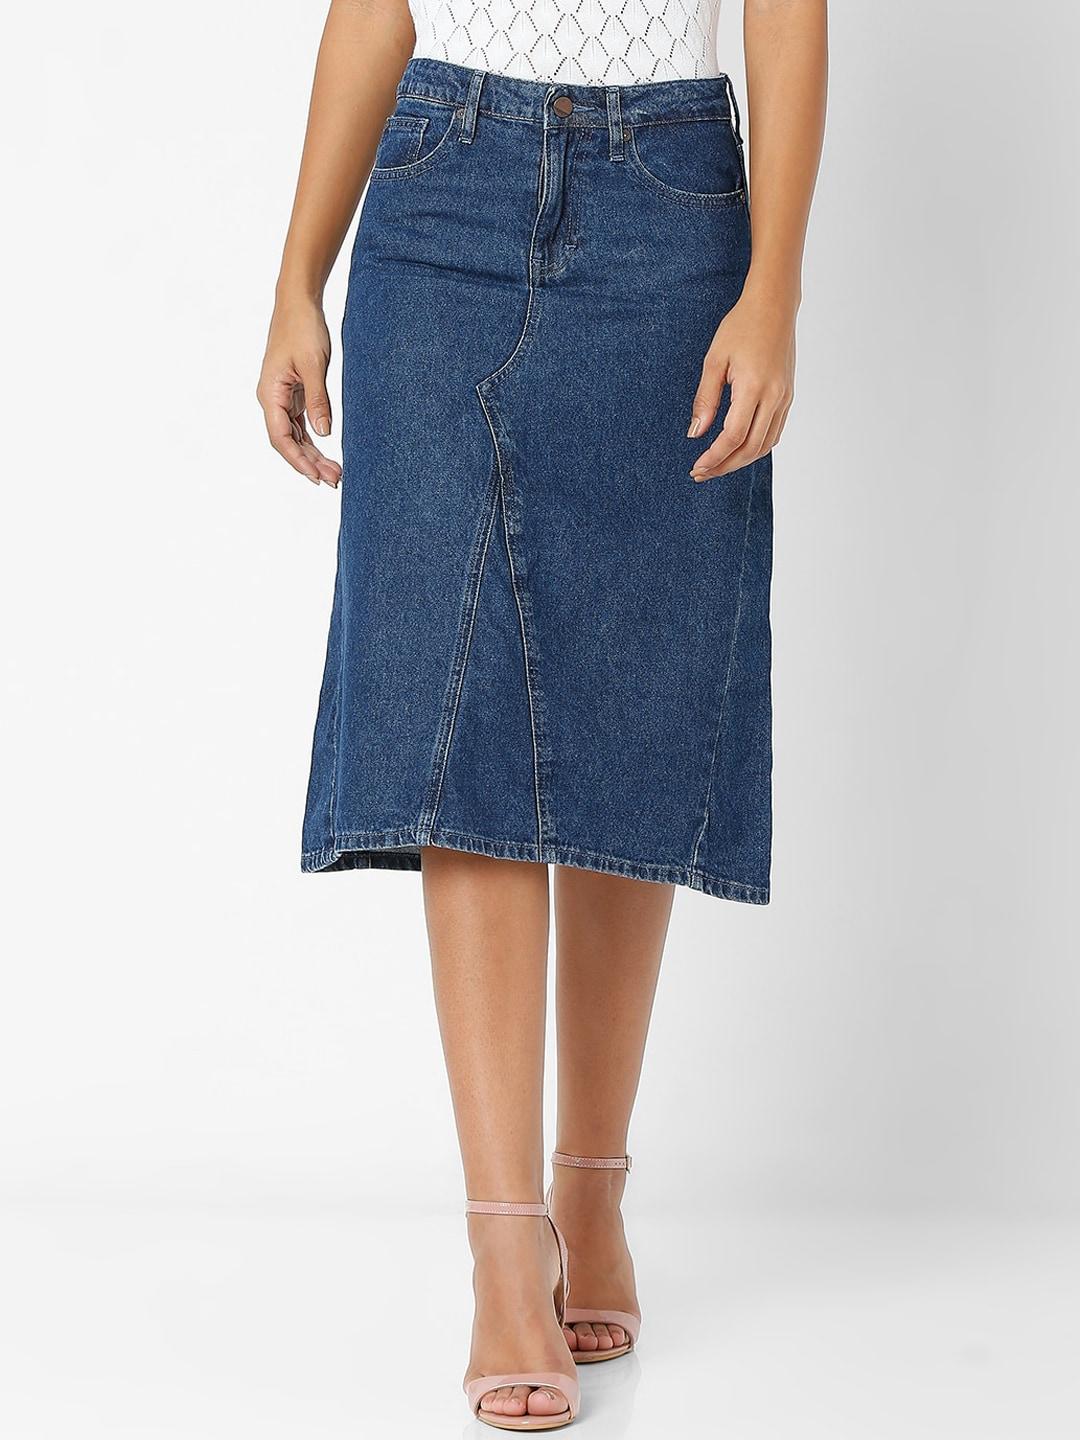 spykar-women-blue-solid-slim-fit-straight-knee-length-denim-skirt